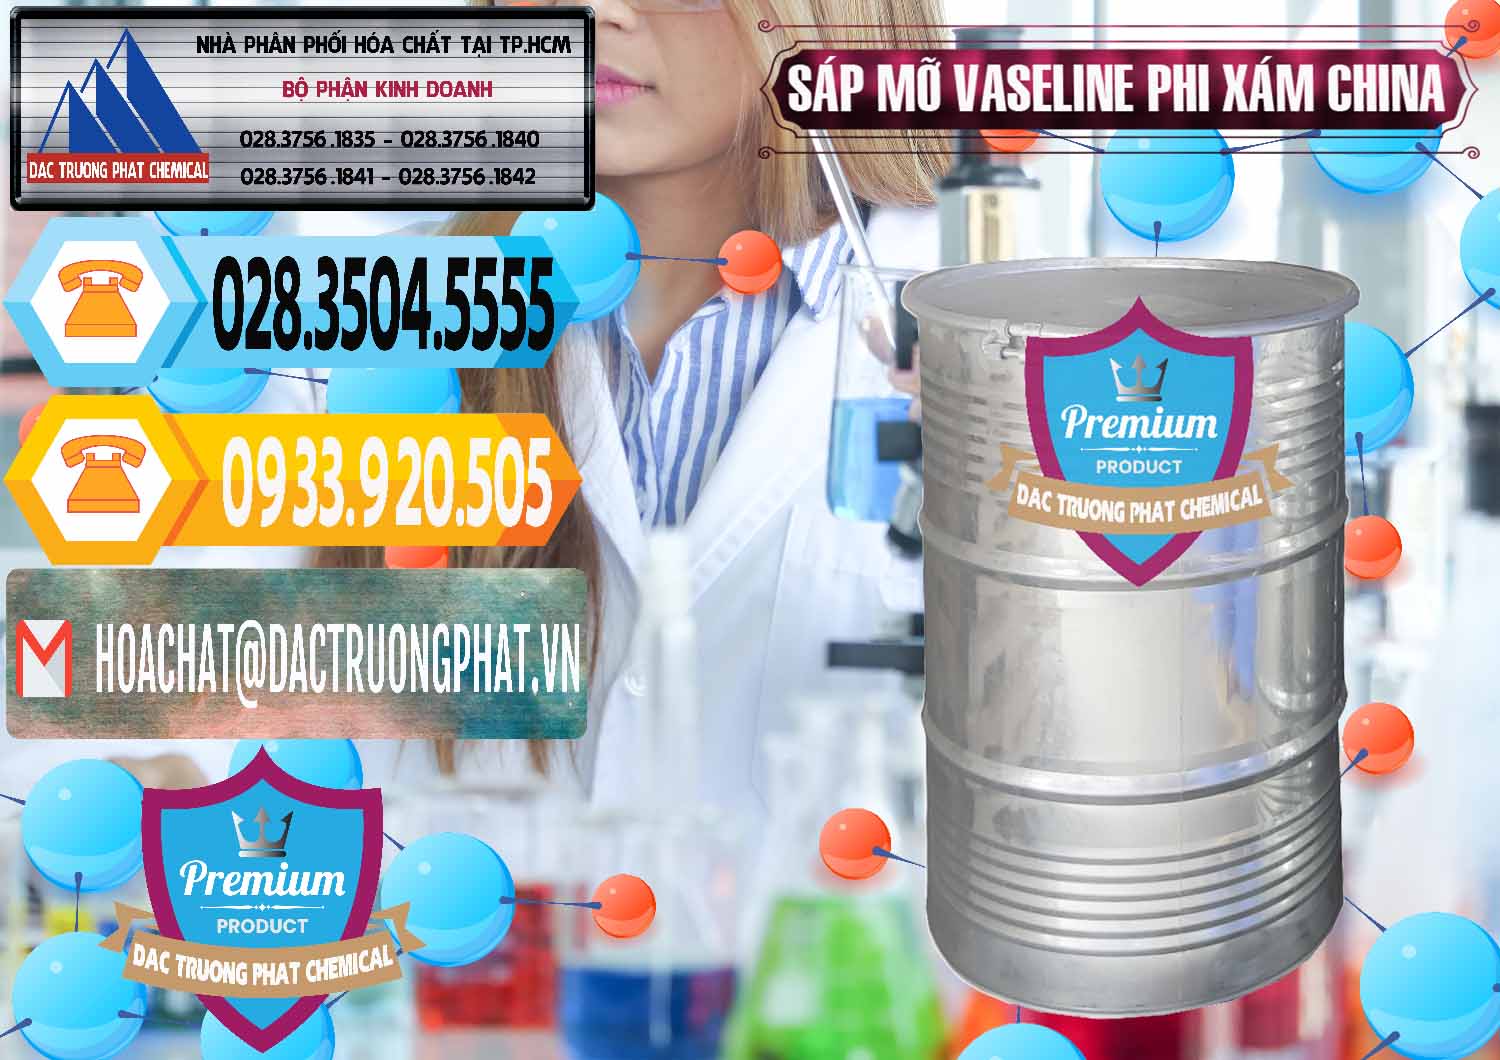 Cty phân phối _ bán Sáp Mỡ Vaseline Phi Xám Trung Quốc China - 0291 - Phân phối _ cung cấp hóa chất tại TP.HCM - hoachattayrua.net